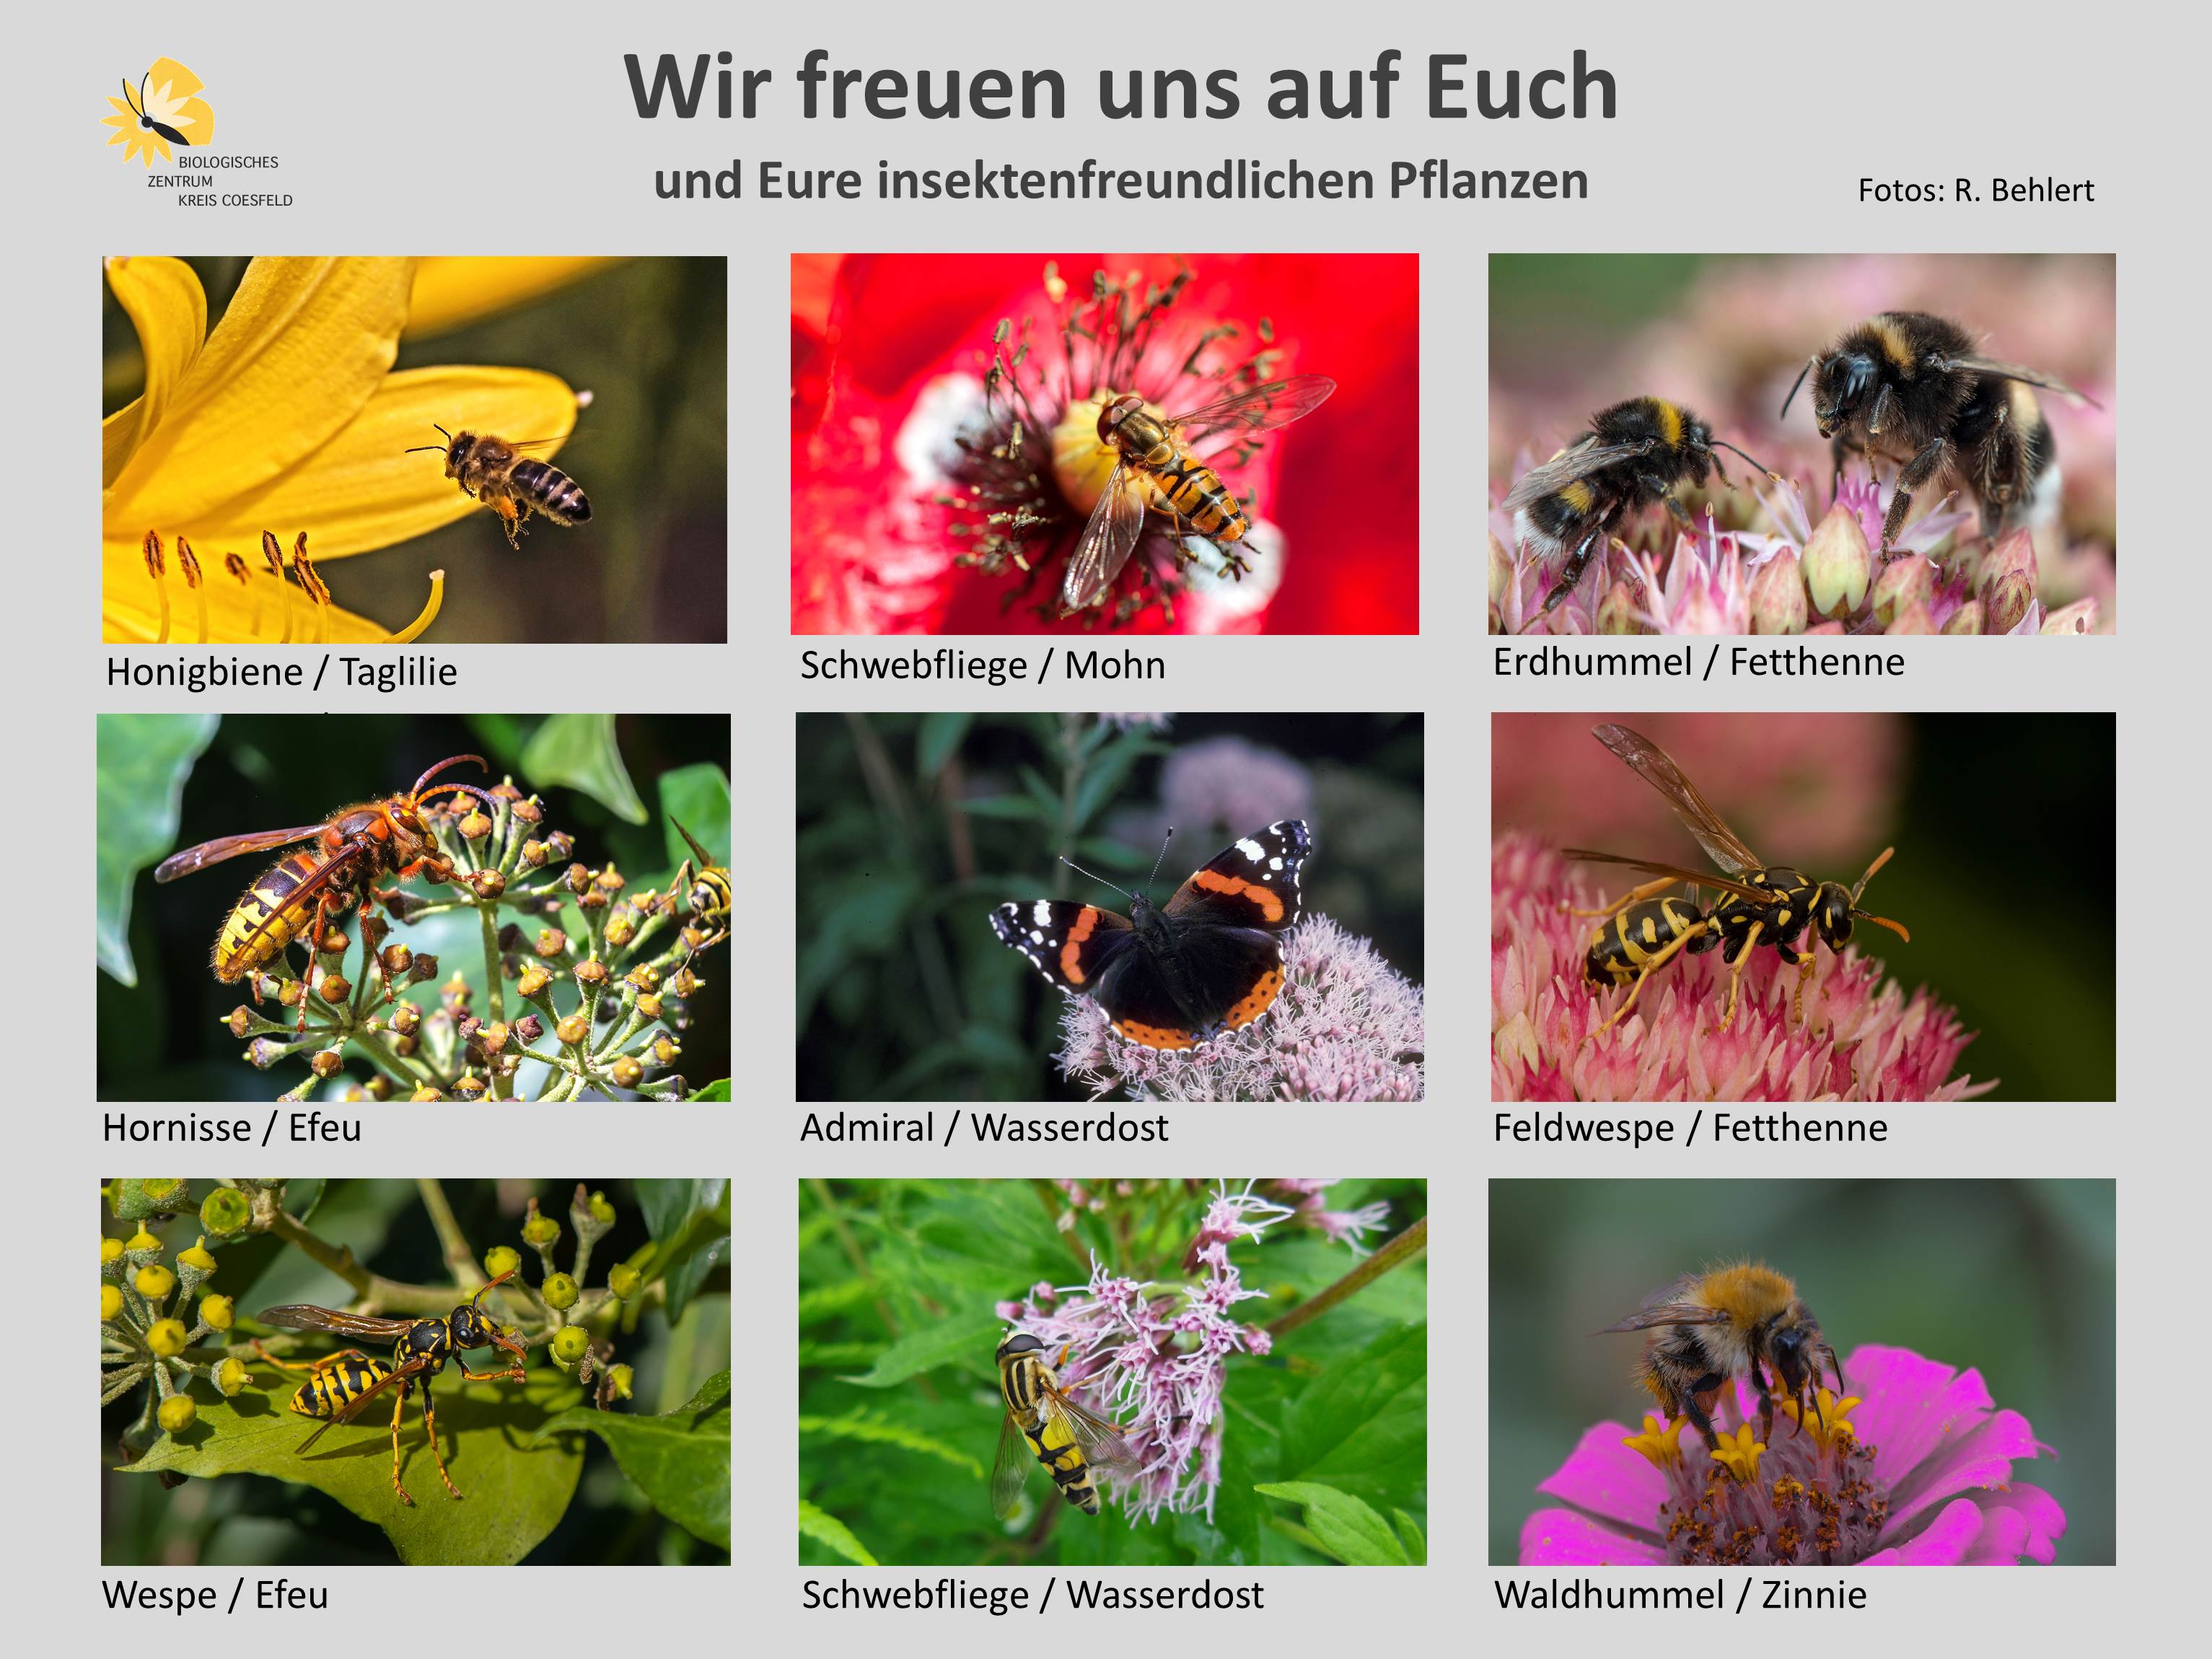 Wir freuen uns auf Euch - eine Fotoauswahl von Insekten im Garten